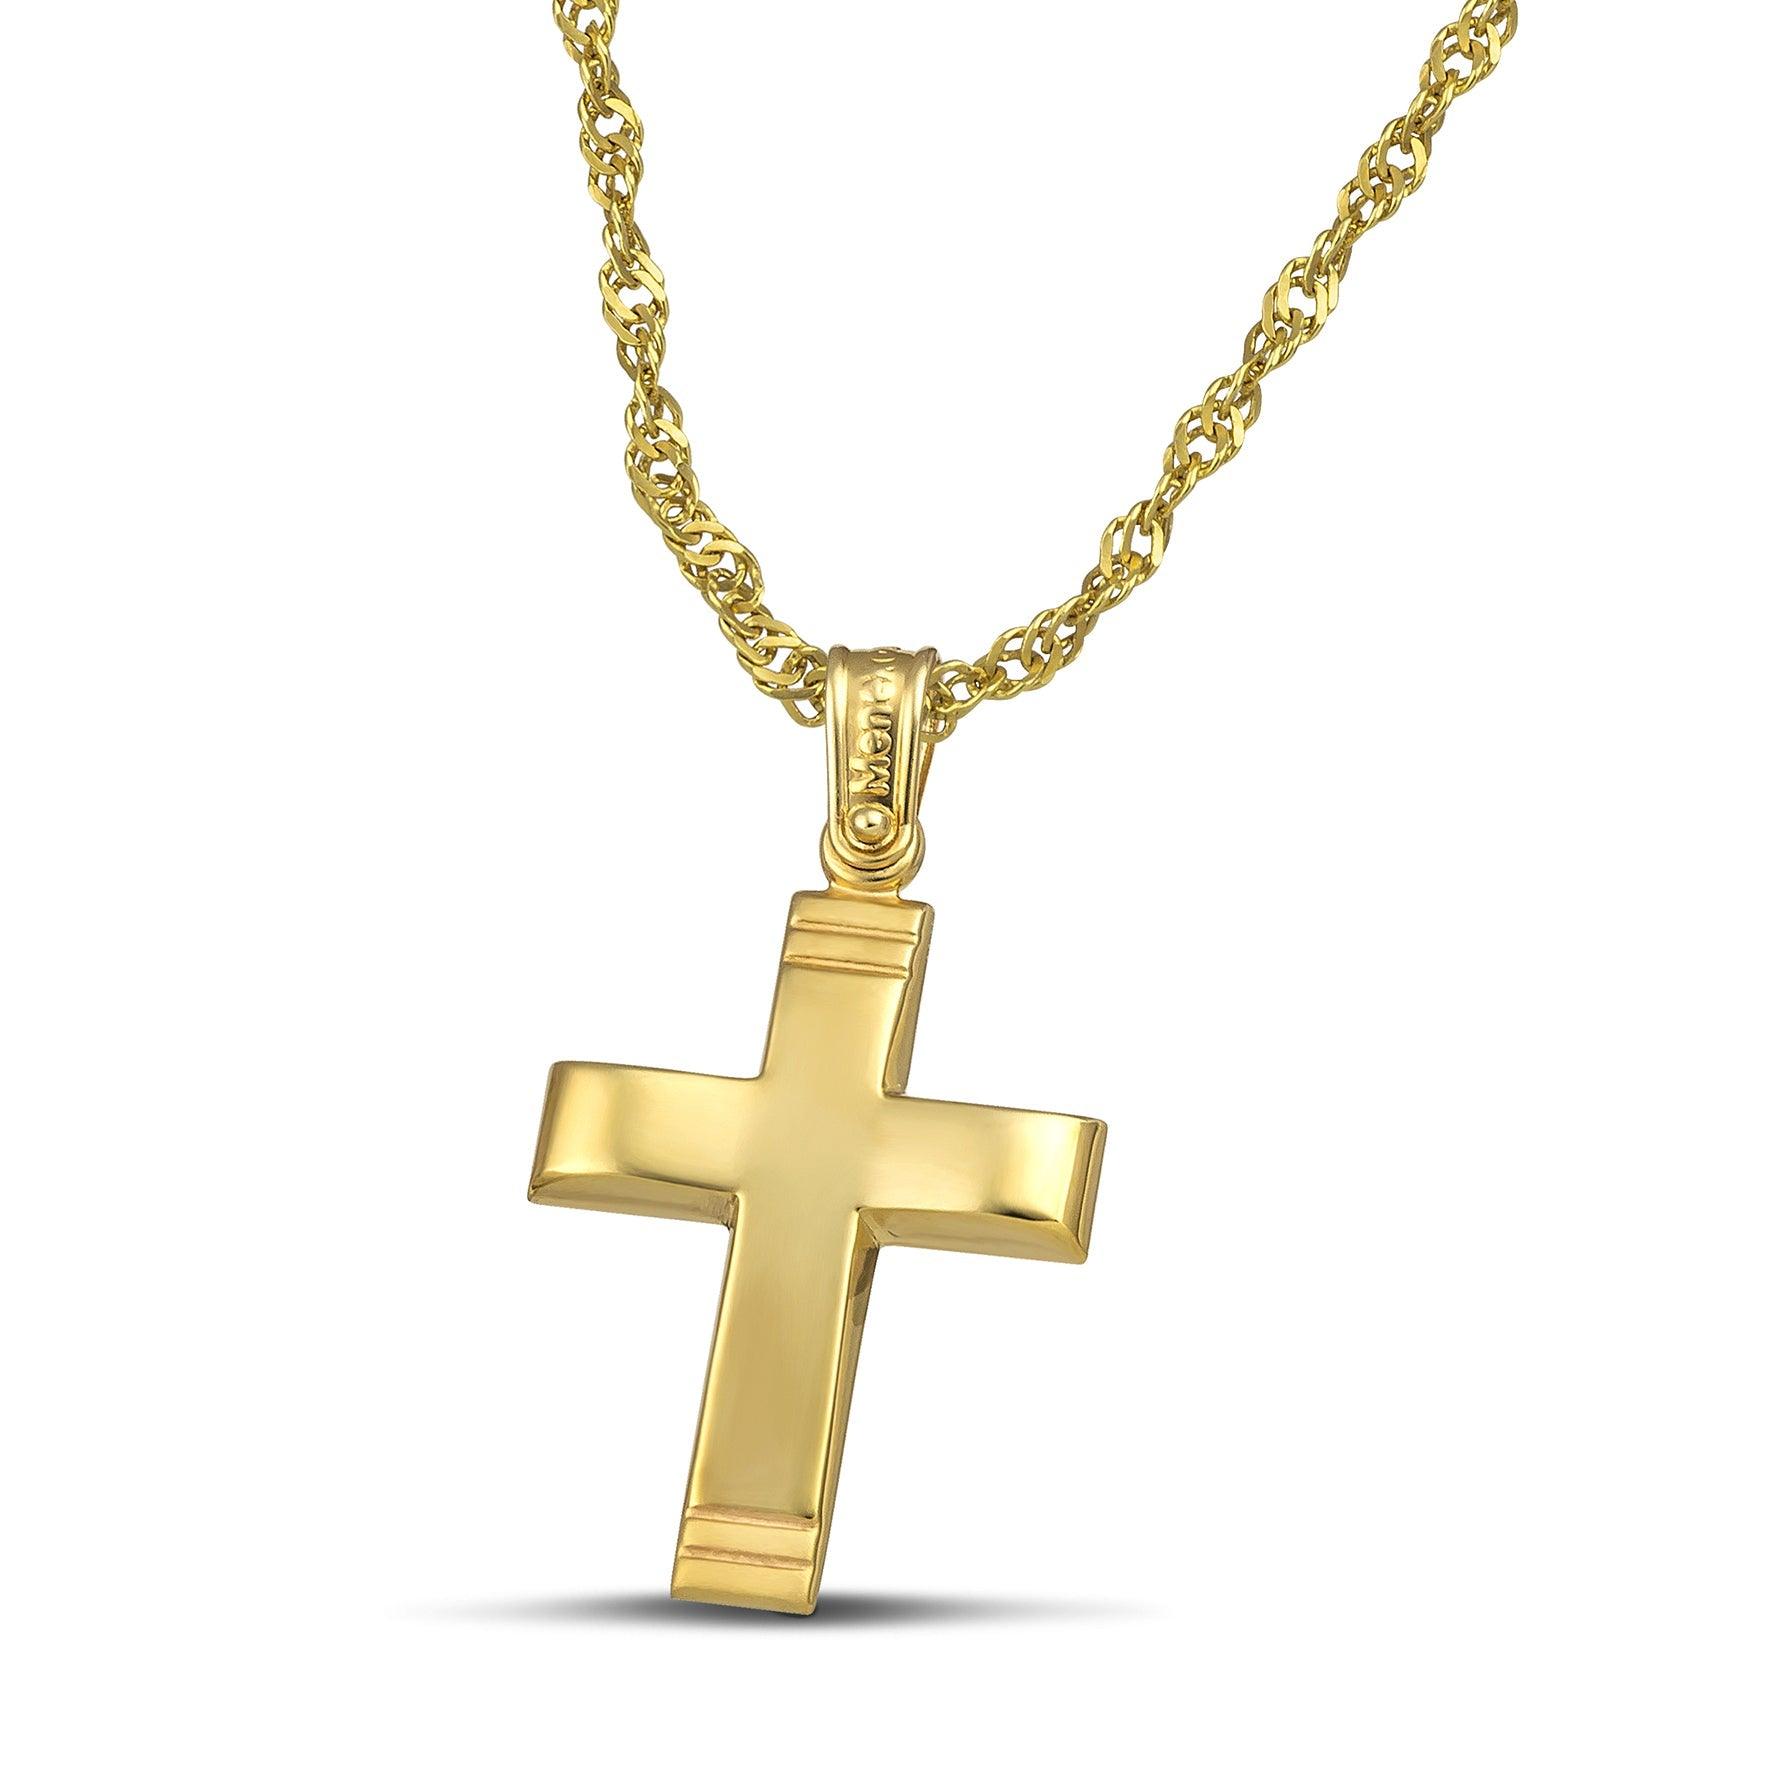 Χρυσός σταυρός Κ14 μίνιμαλ, λουστράτος. Φορεμένος σε πλεκτή αλυσίδα.